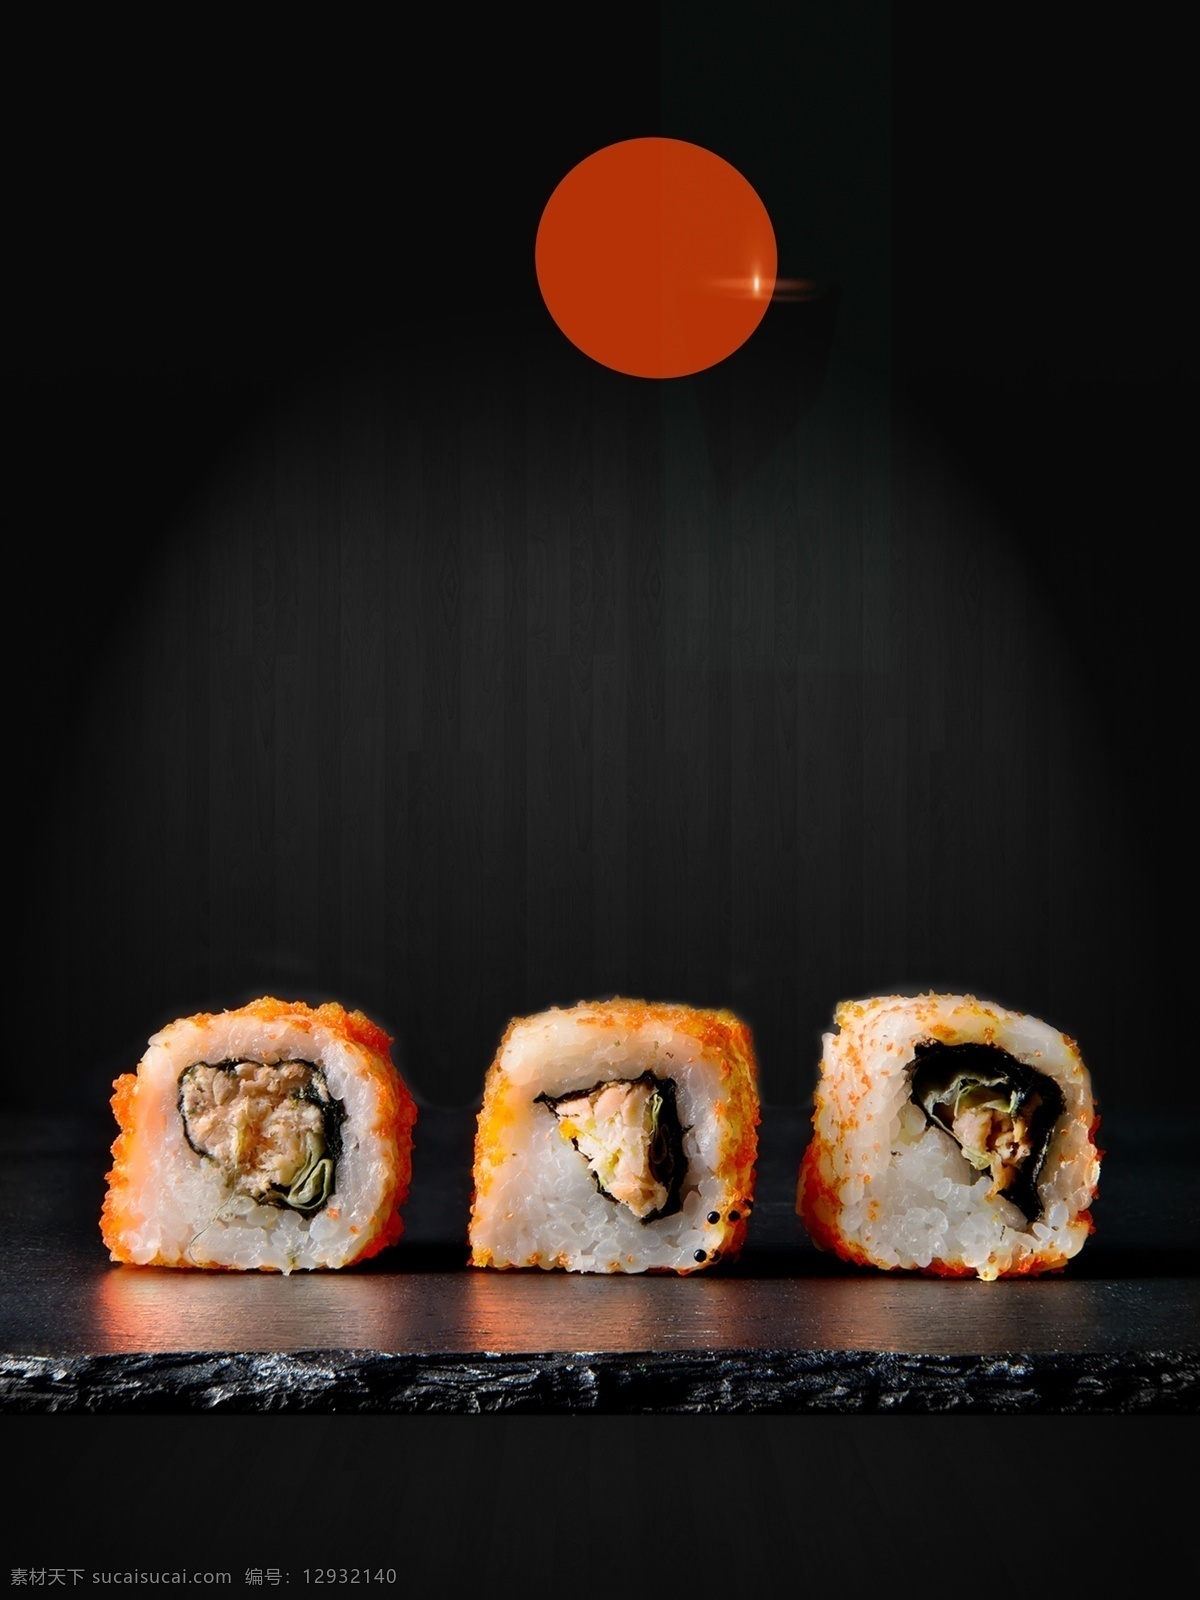 日本料理 寿司 海报 餐厅海报宣传 日本料理菜单 日本料理海报 日本料理美食 日本料理寿司 日本料理文化 日本美食 日本寿司 日料美食 三文鱼寿司